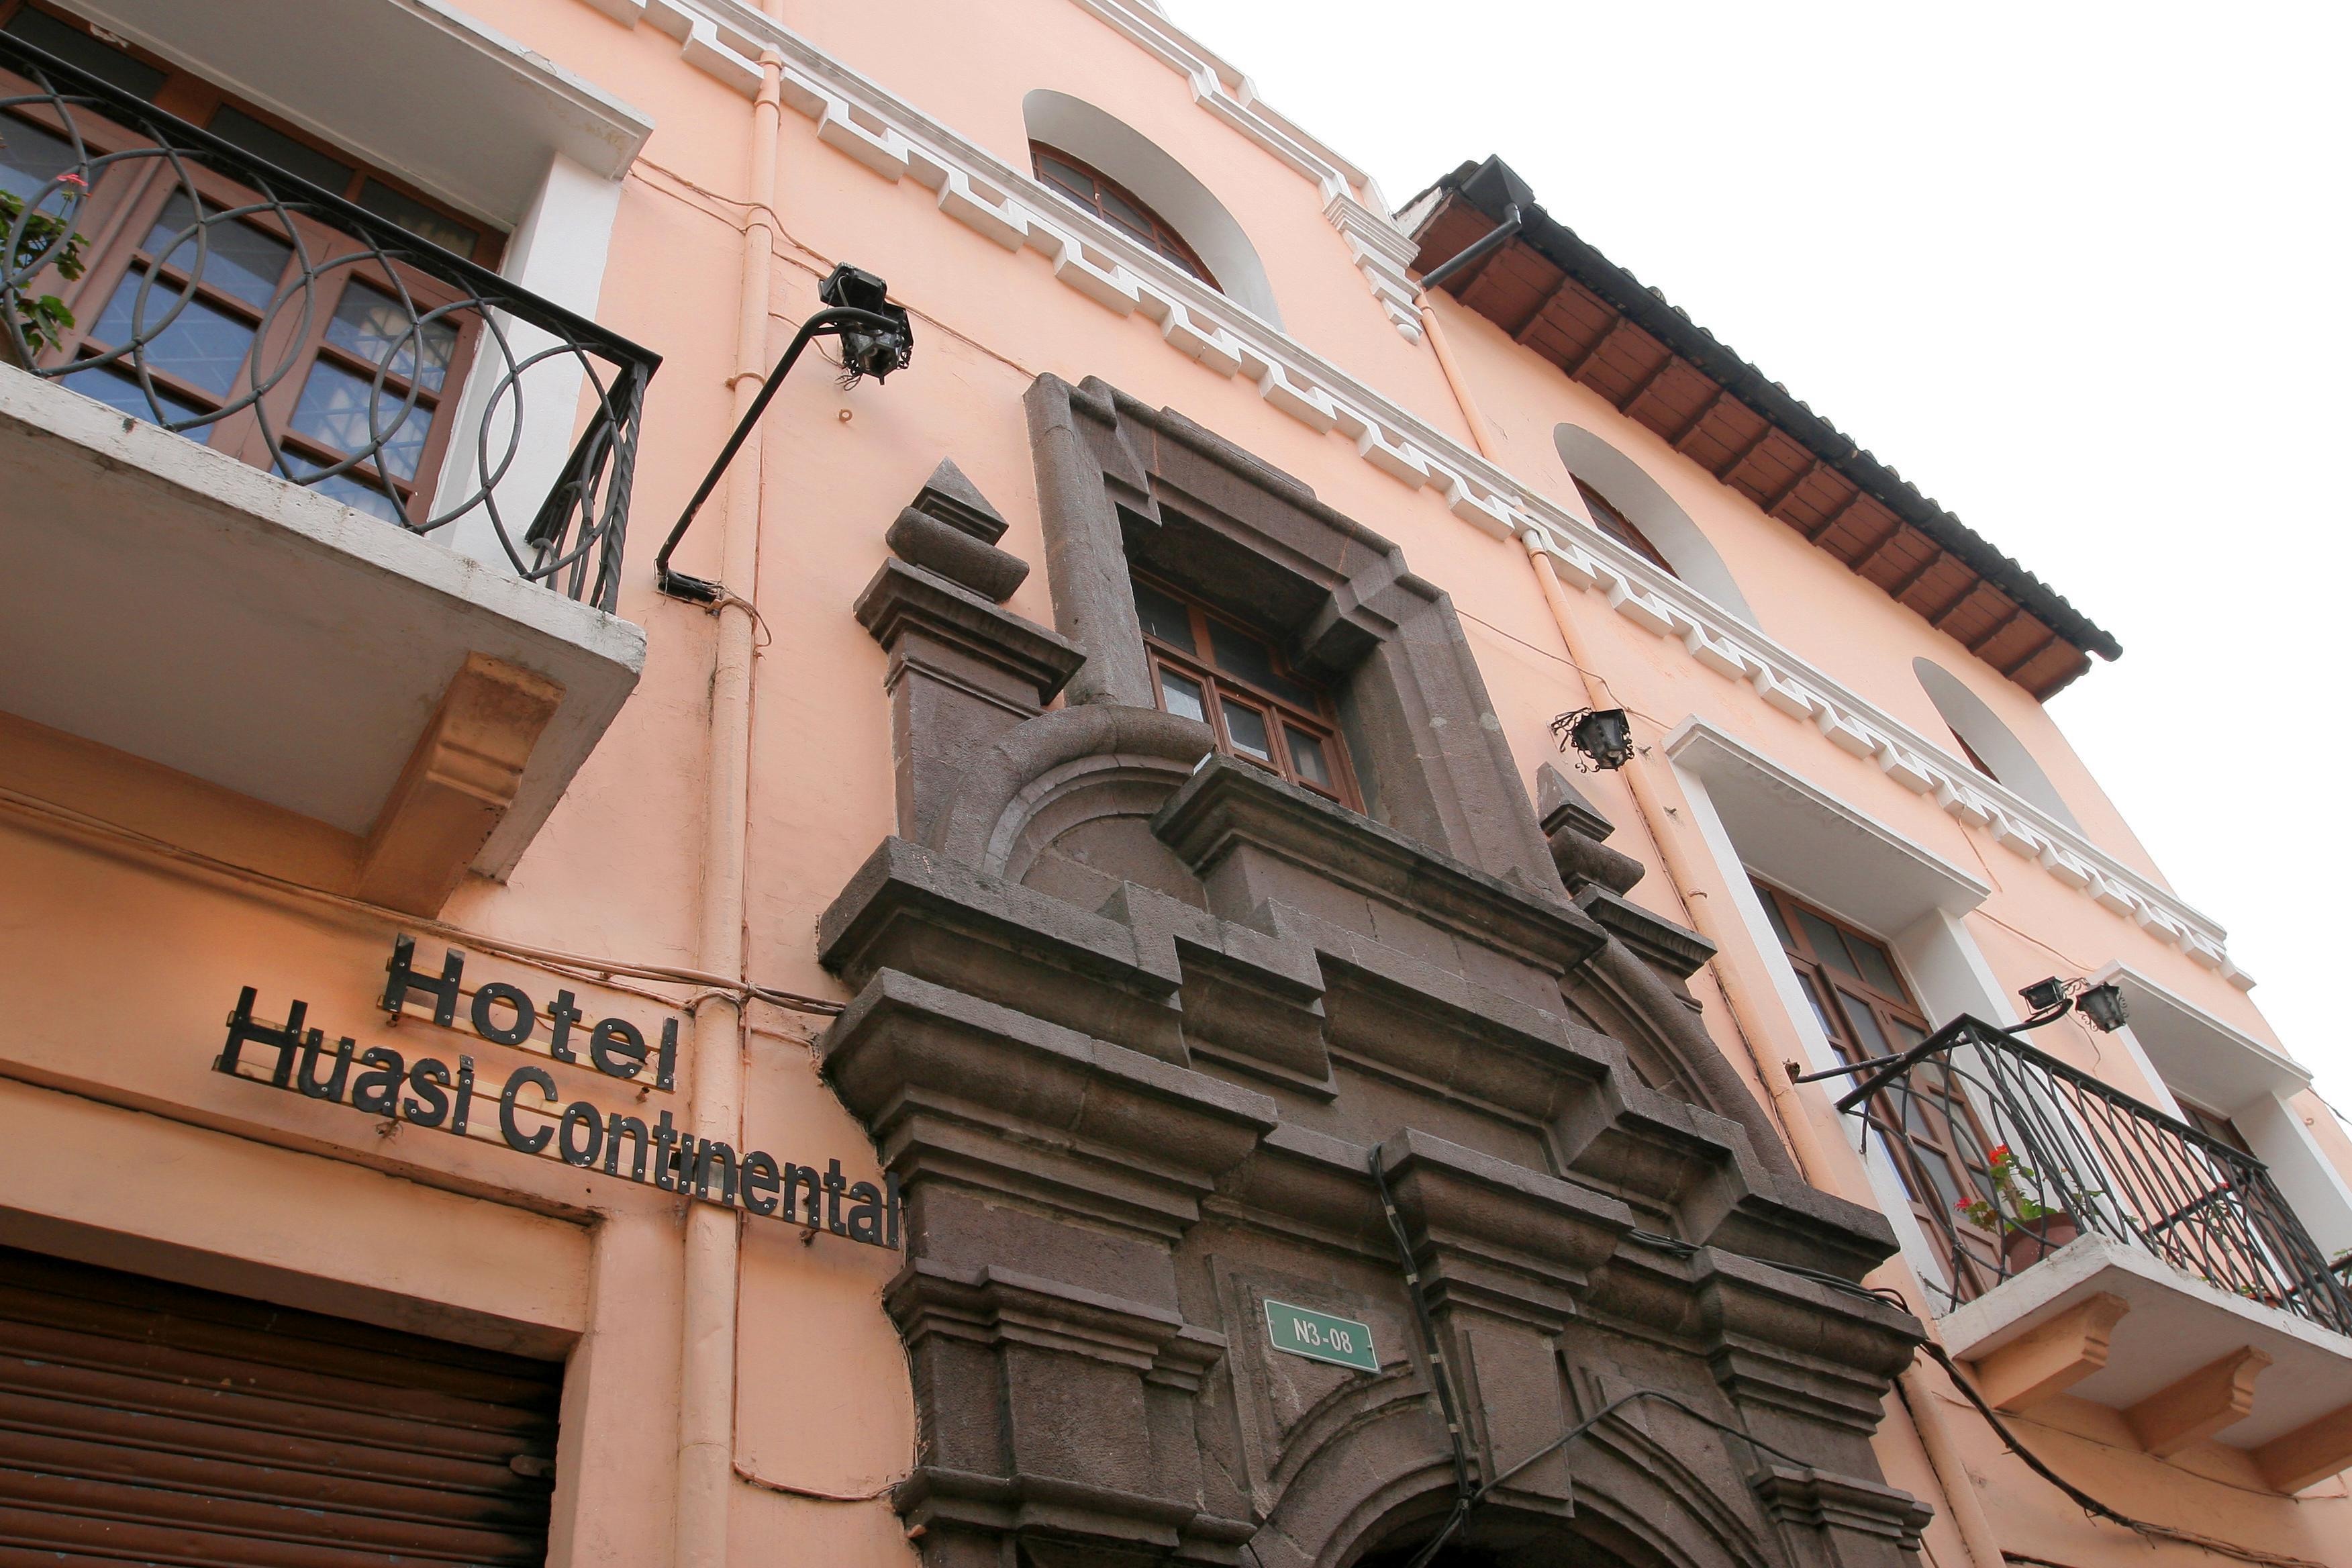 Hotel Huasi Continental Quito Exteriér fotografie